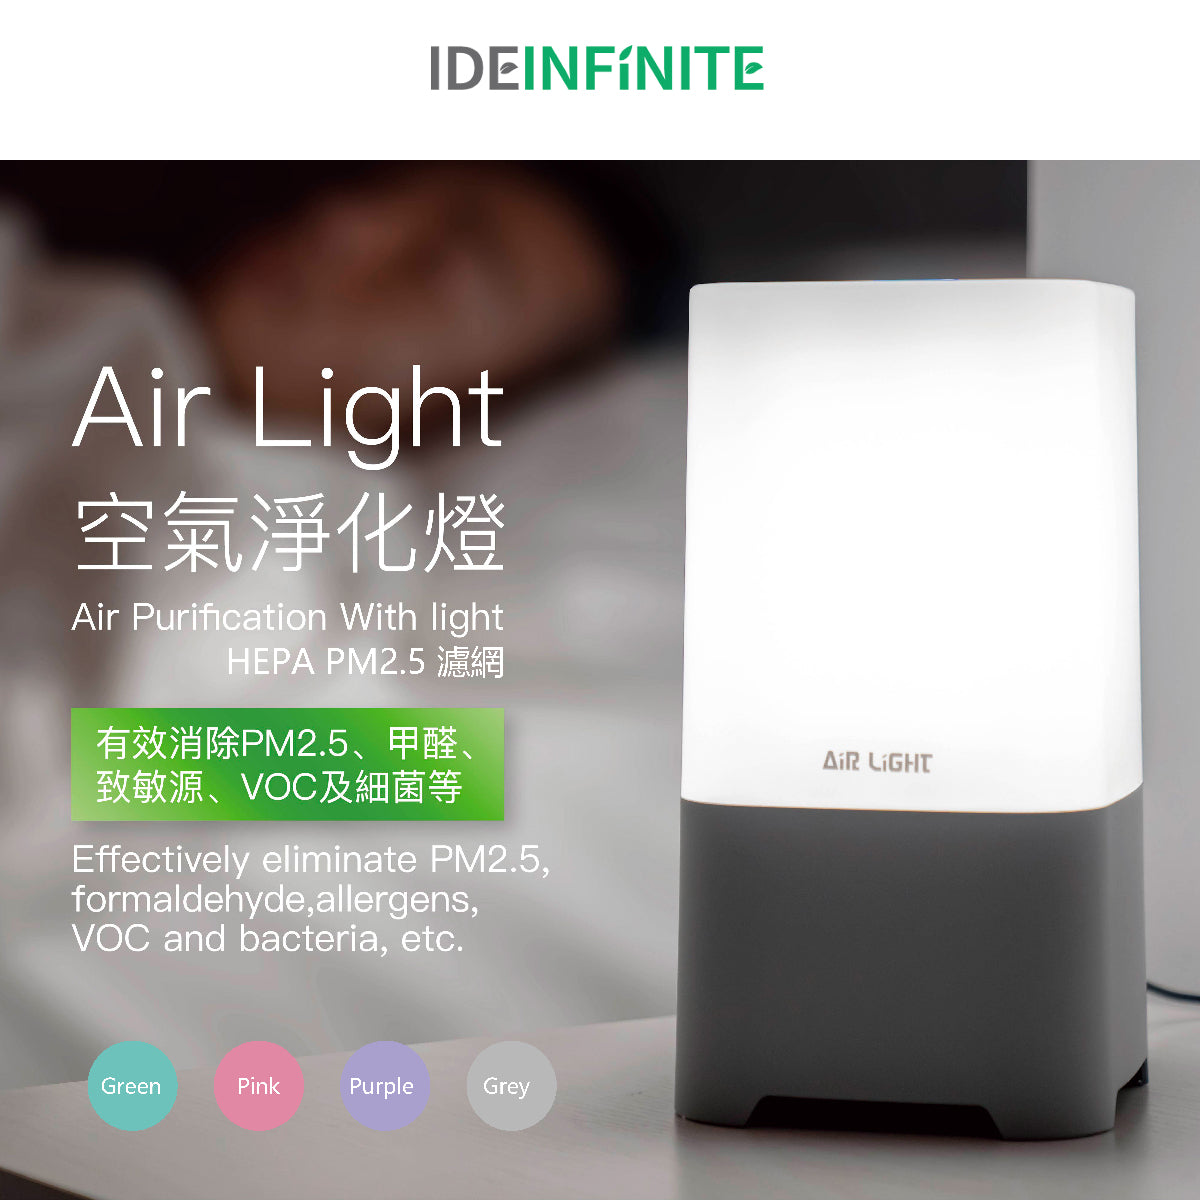 Air Light - 2合1 空氣淨化機 (PM2.5 HEPA 高效濾網) 內置 LED 燈 ~ 粉紫